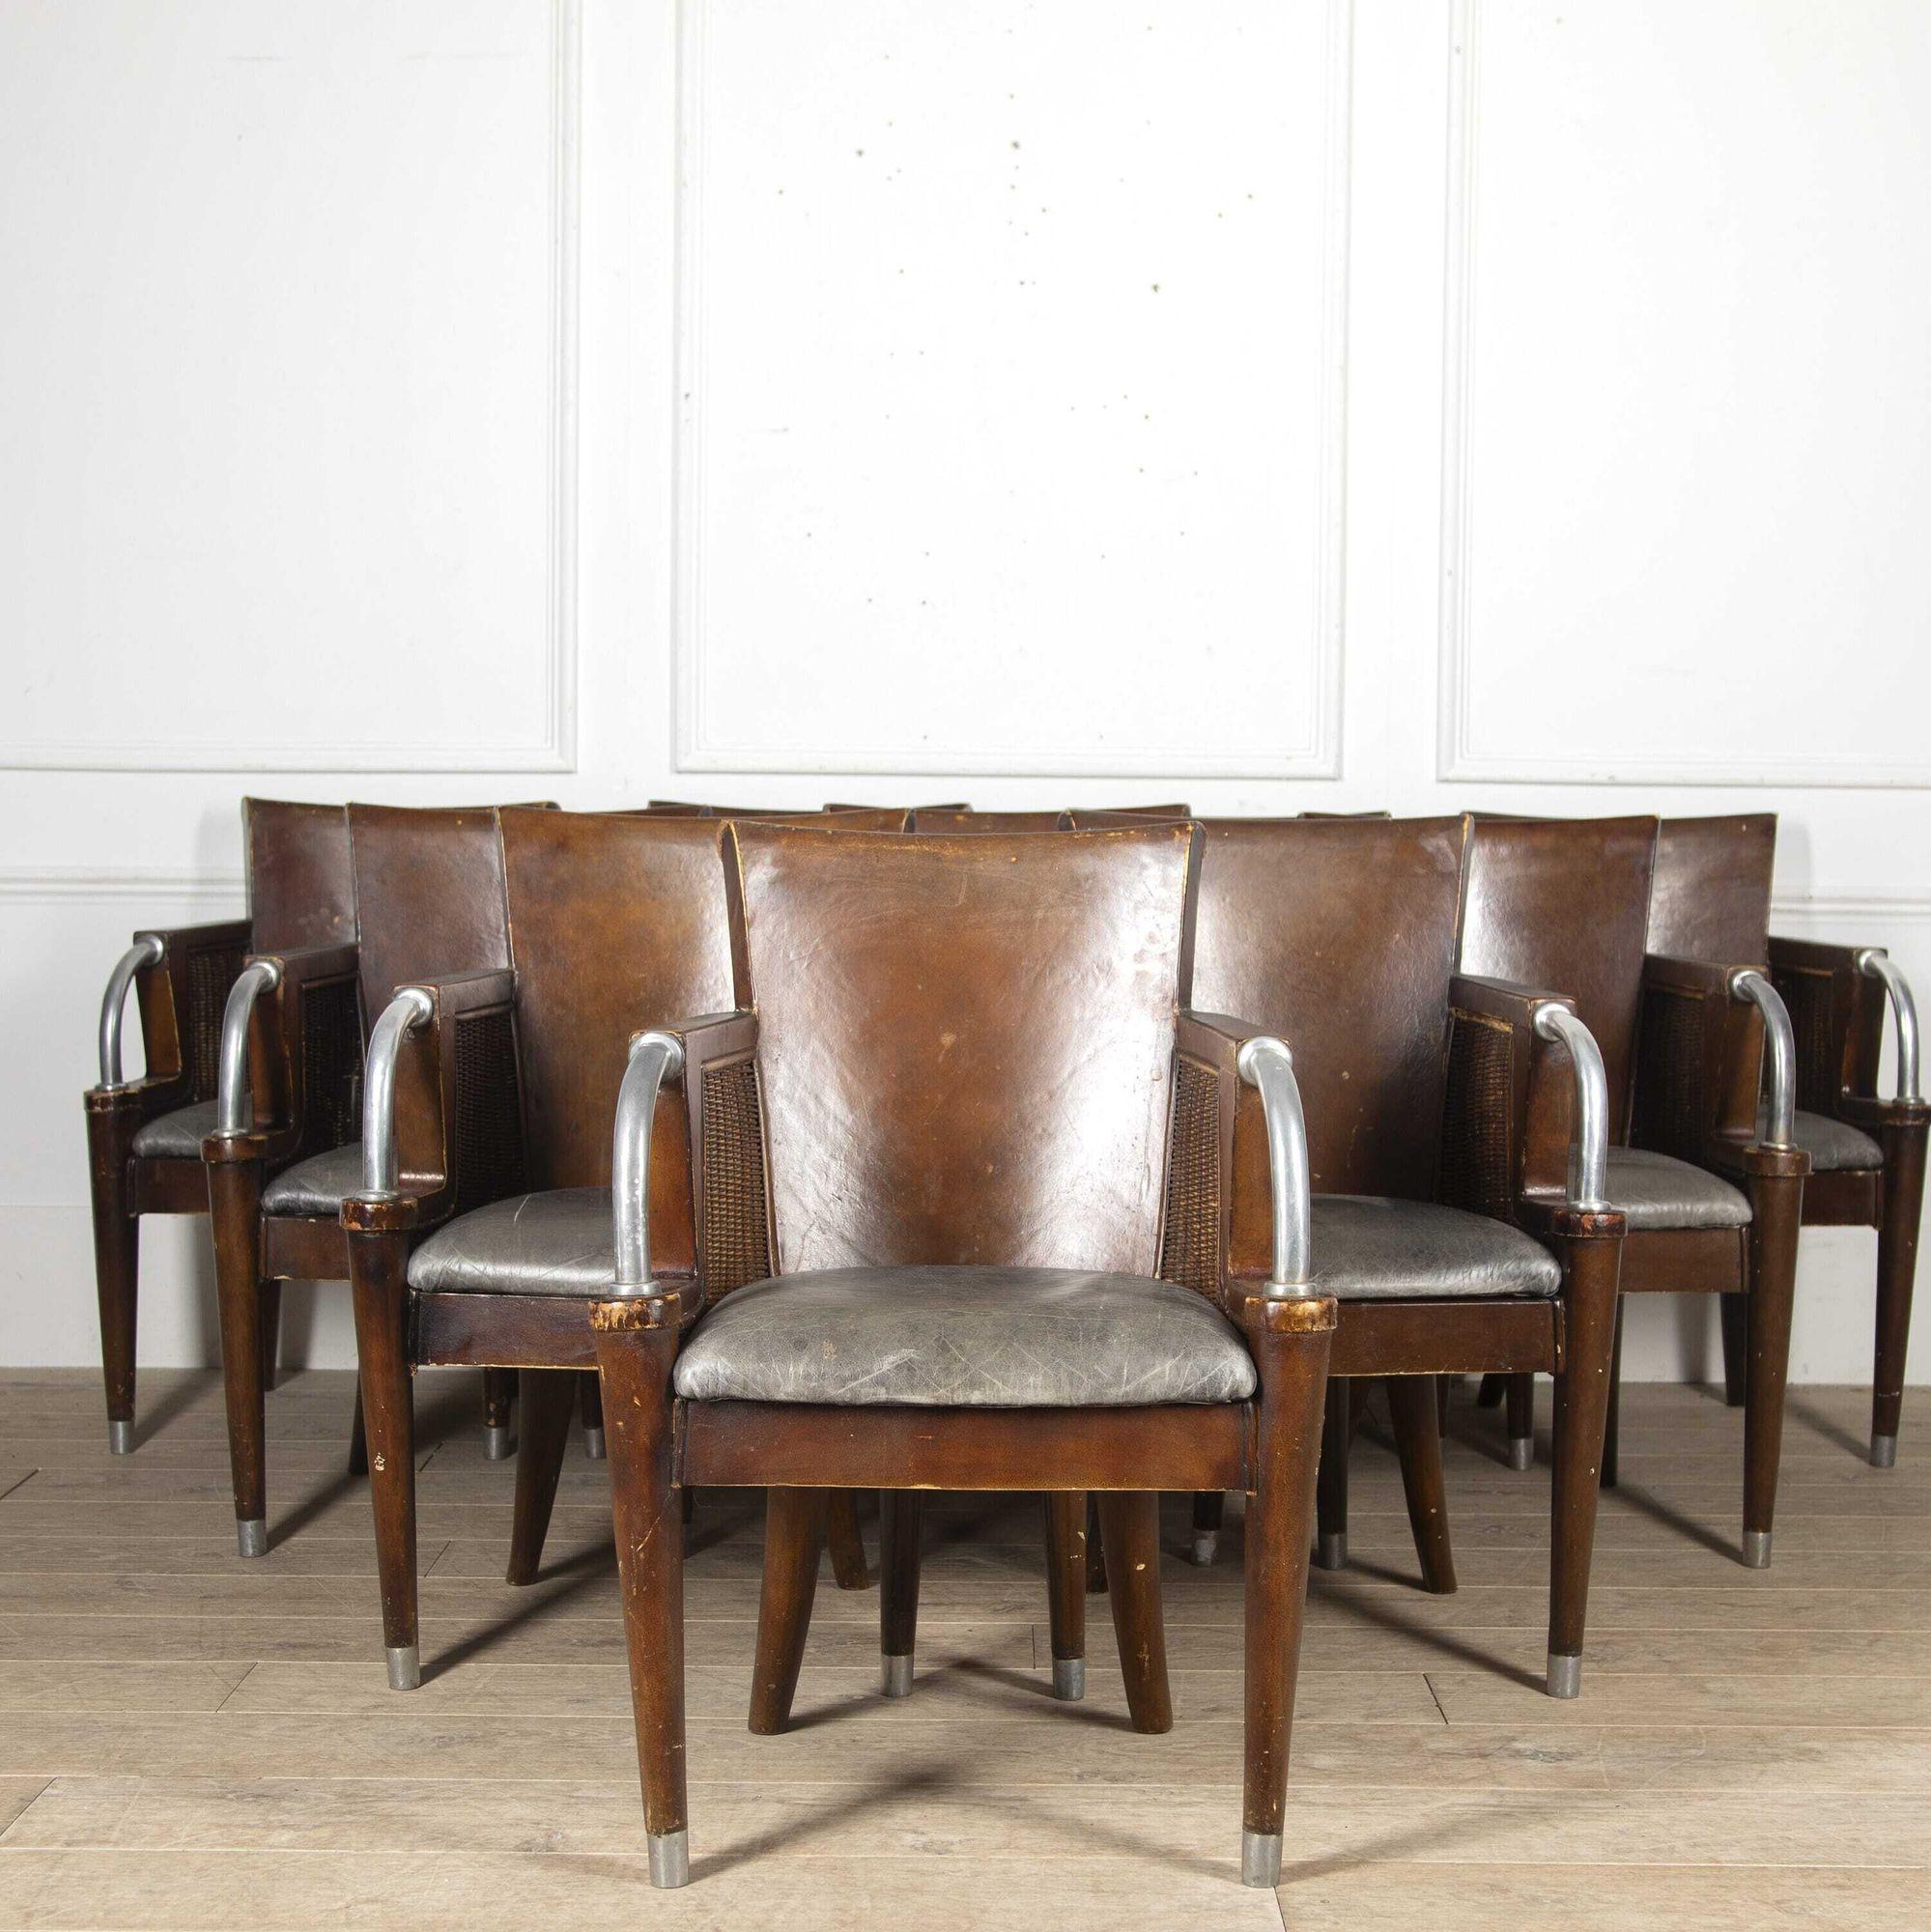 Ensemble de dix fauteuils de style Art déco.
Ces charmantes chaises sont construites à partir d'un mélange d'osier, de métal et de cuir et sont de très bonne taille. Les dix chaises sont de construction robuste et présentent très peu de signes